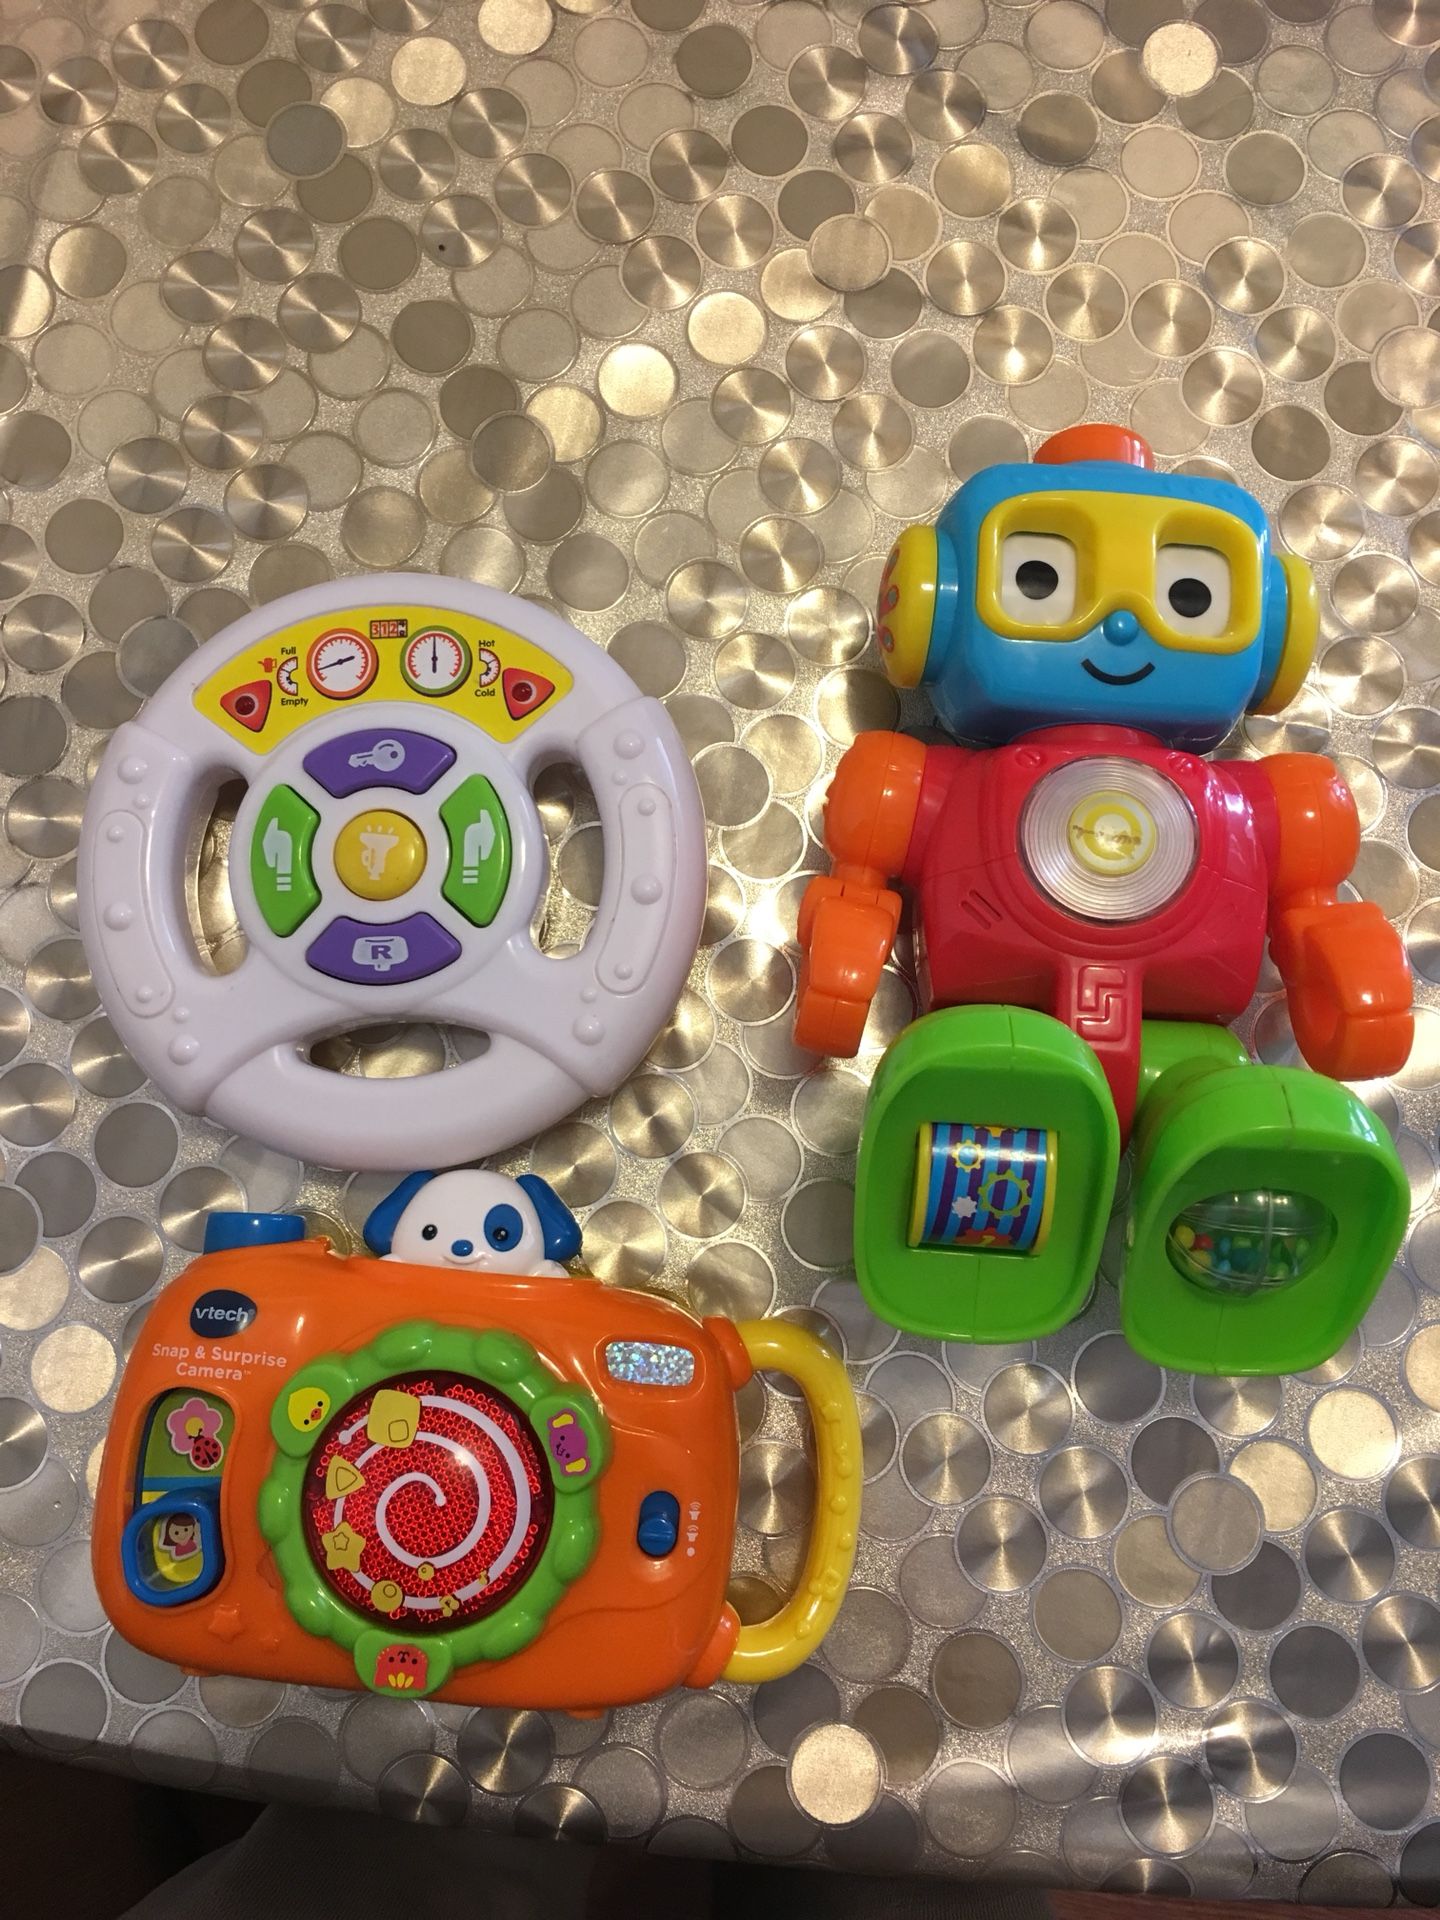 Kid’s toys